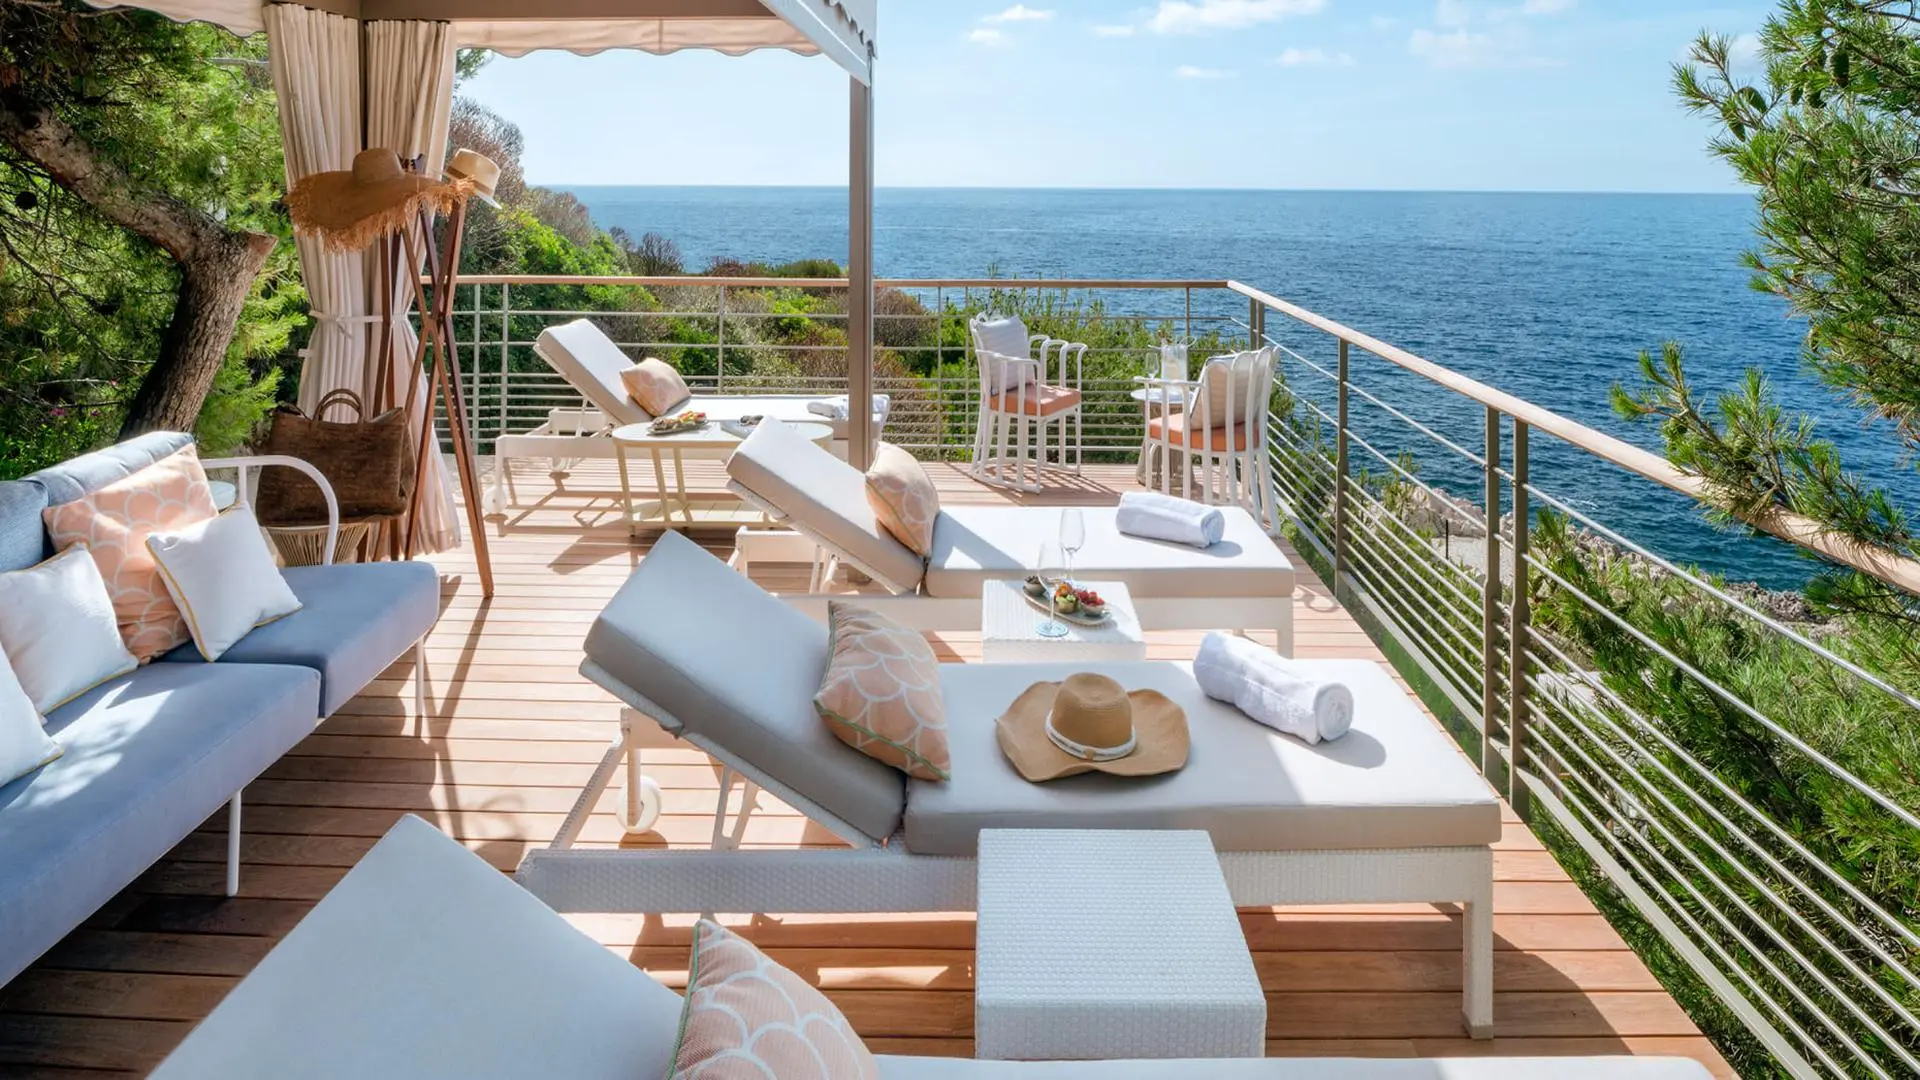 Grand-Hotel du Cap-Ferrat_France_Le Club Dauphin - Private Seaside Cabana 01_VIP Trips For Kids